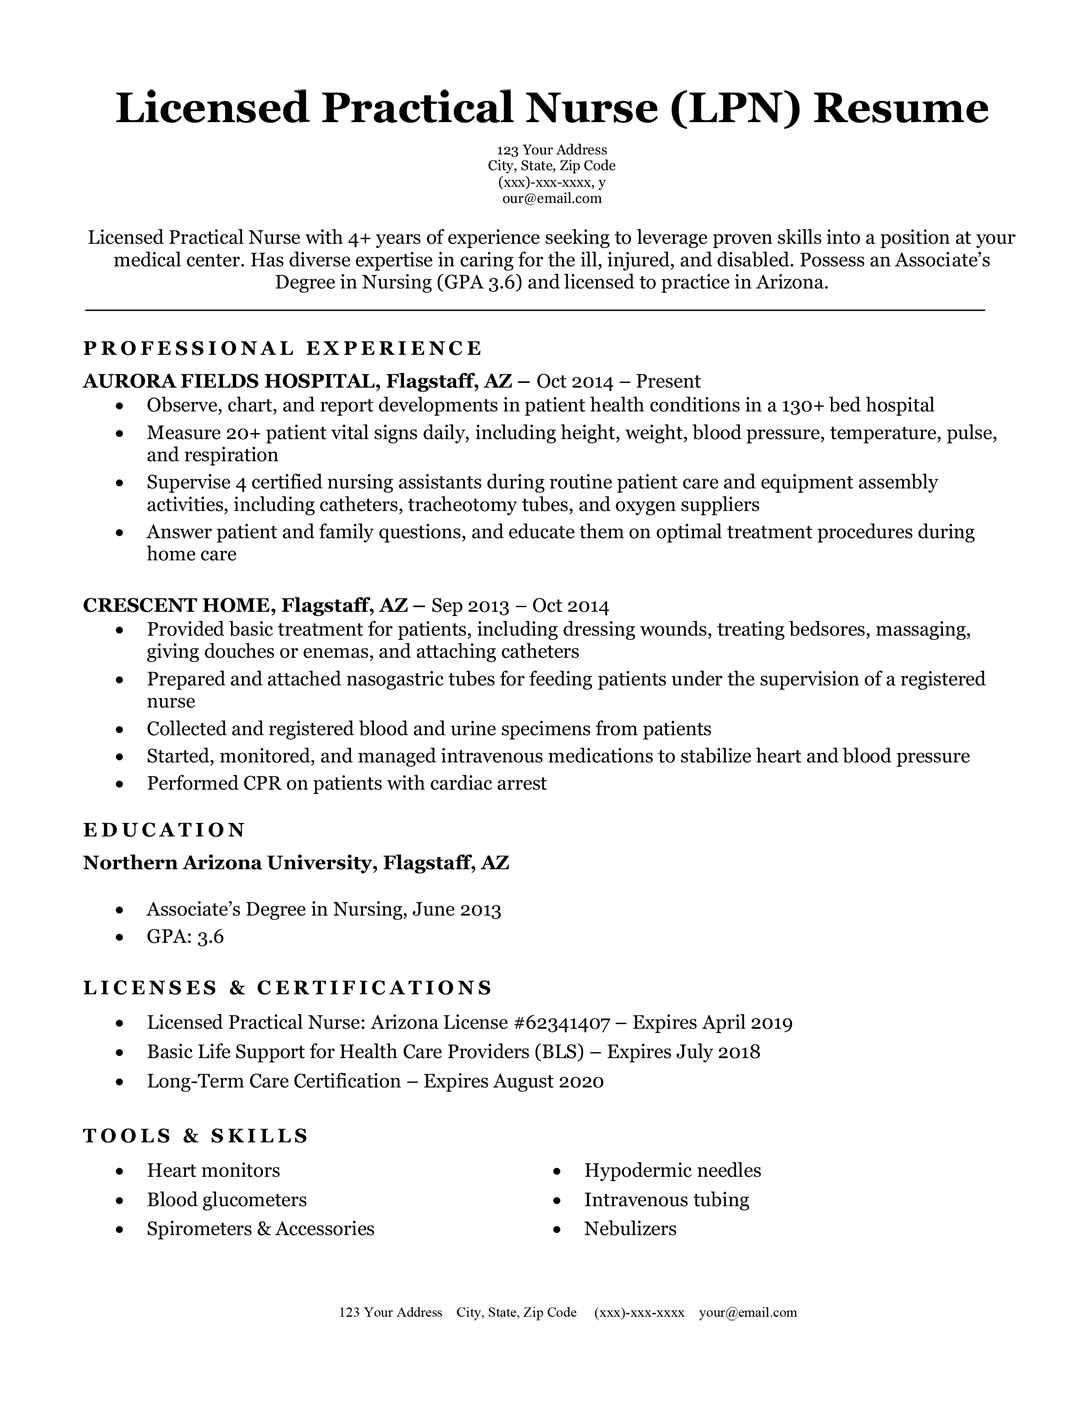 Licensed practical nurse LPN resume sample